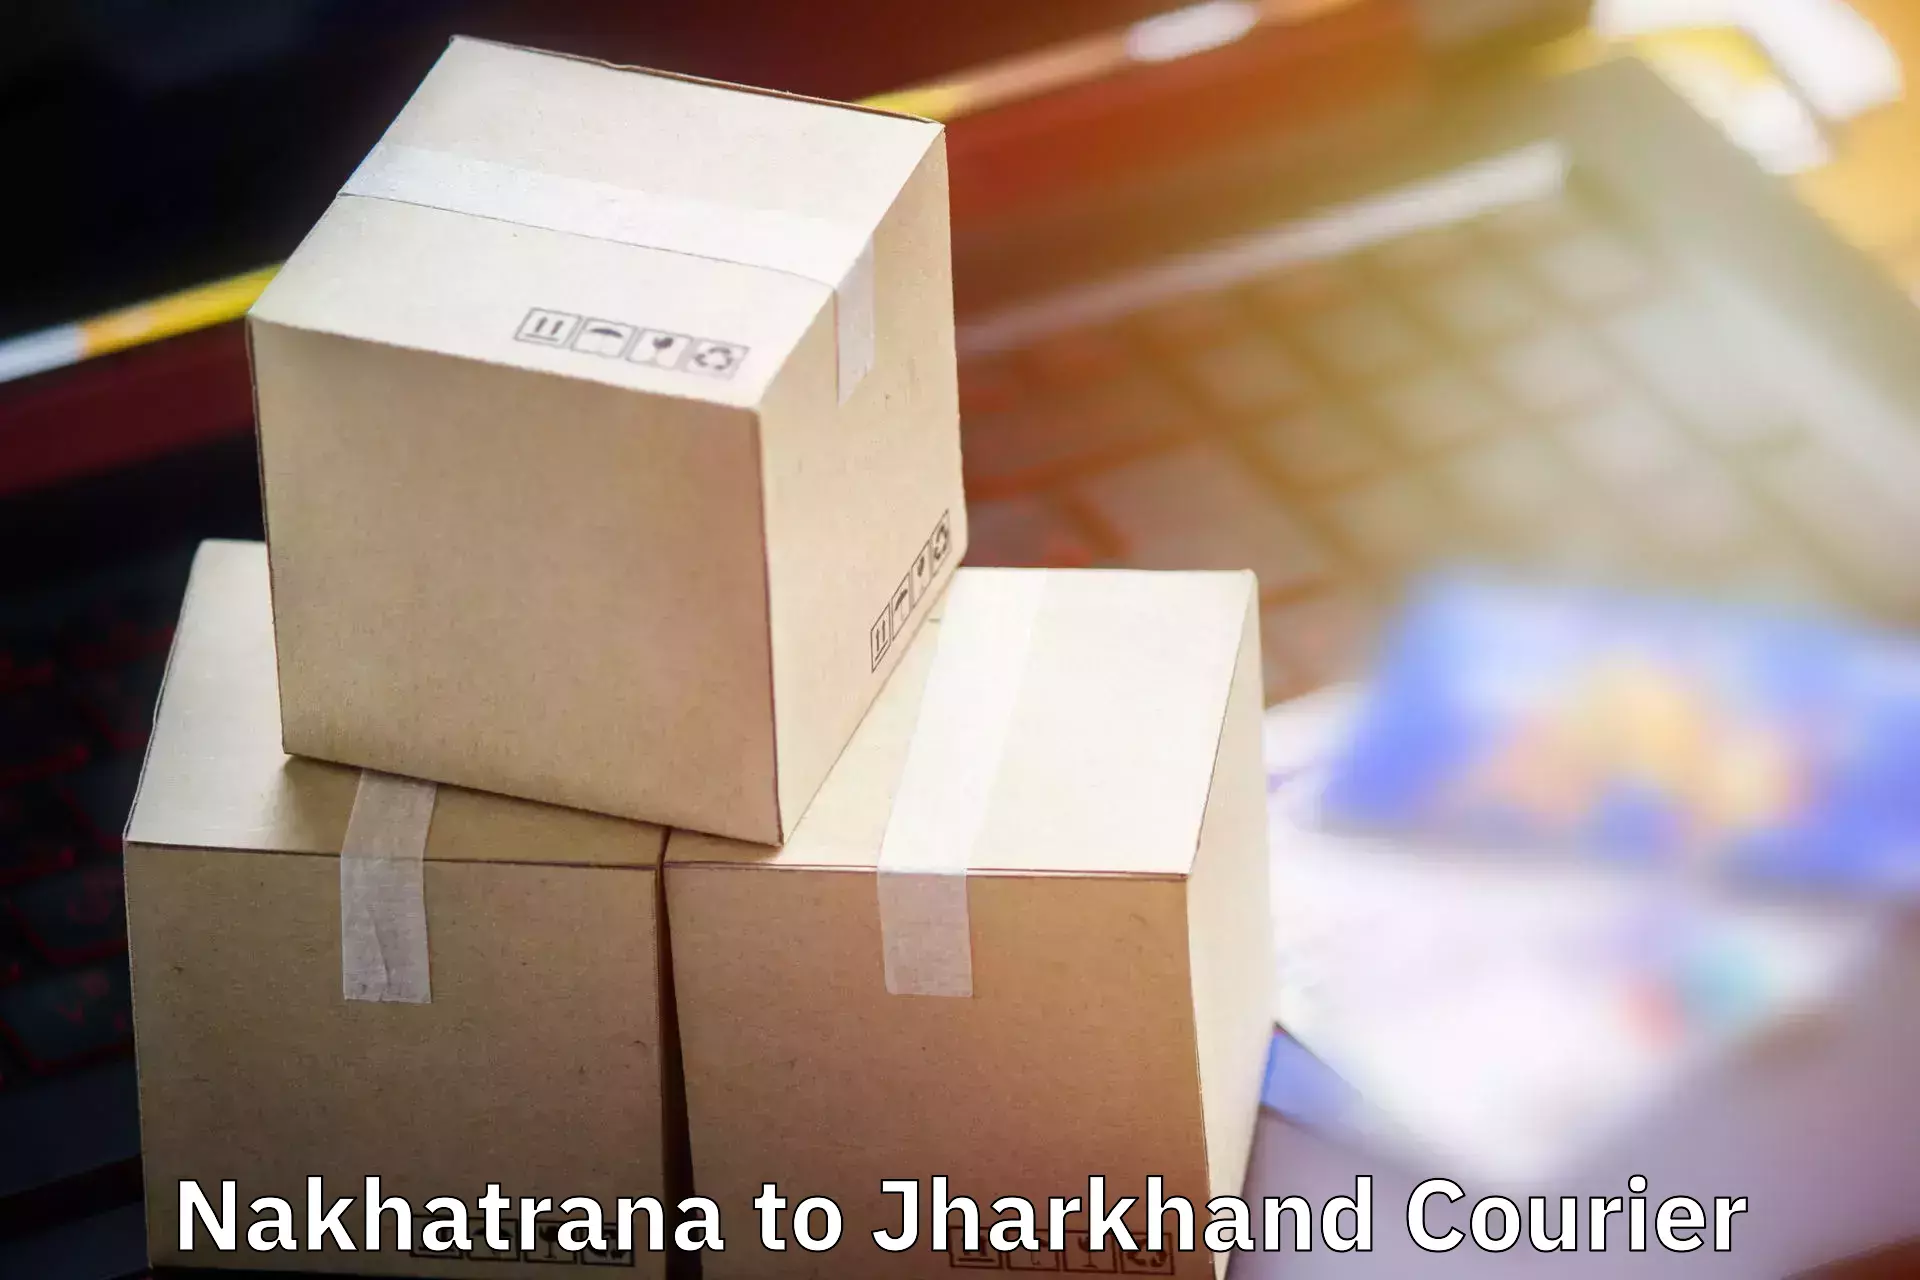 Personalized luggage shipping Nakhatrana to Bokaro